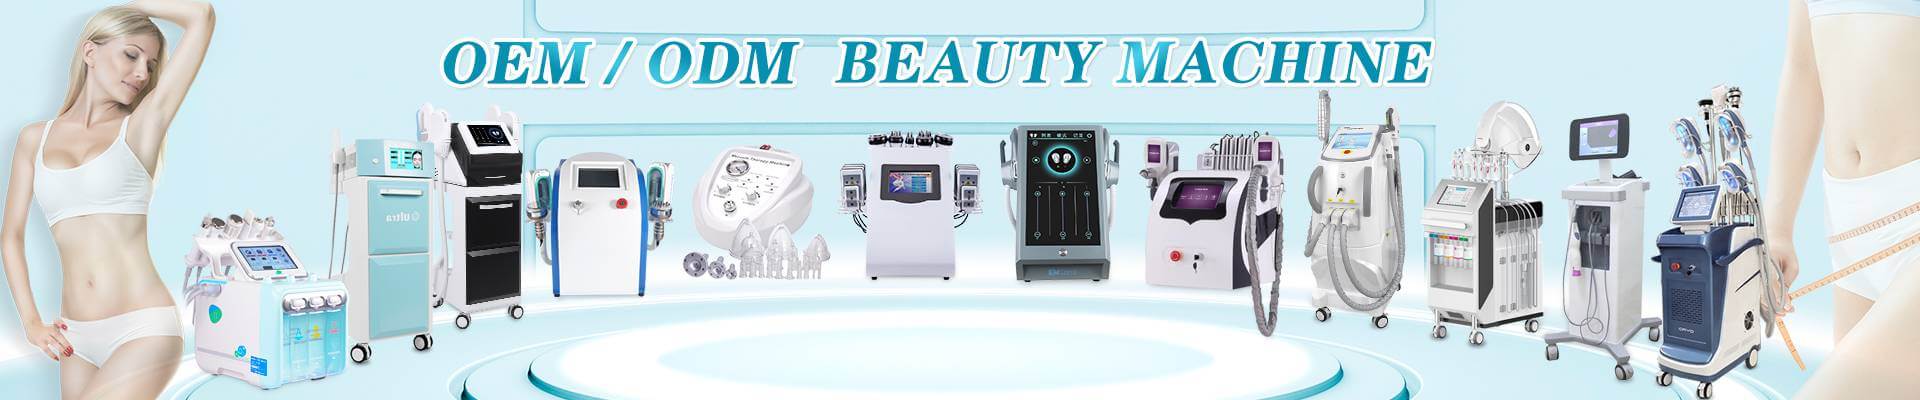 Laser beauty system